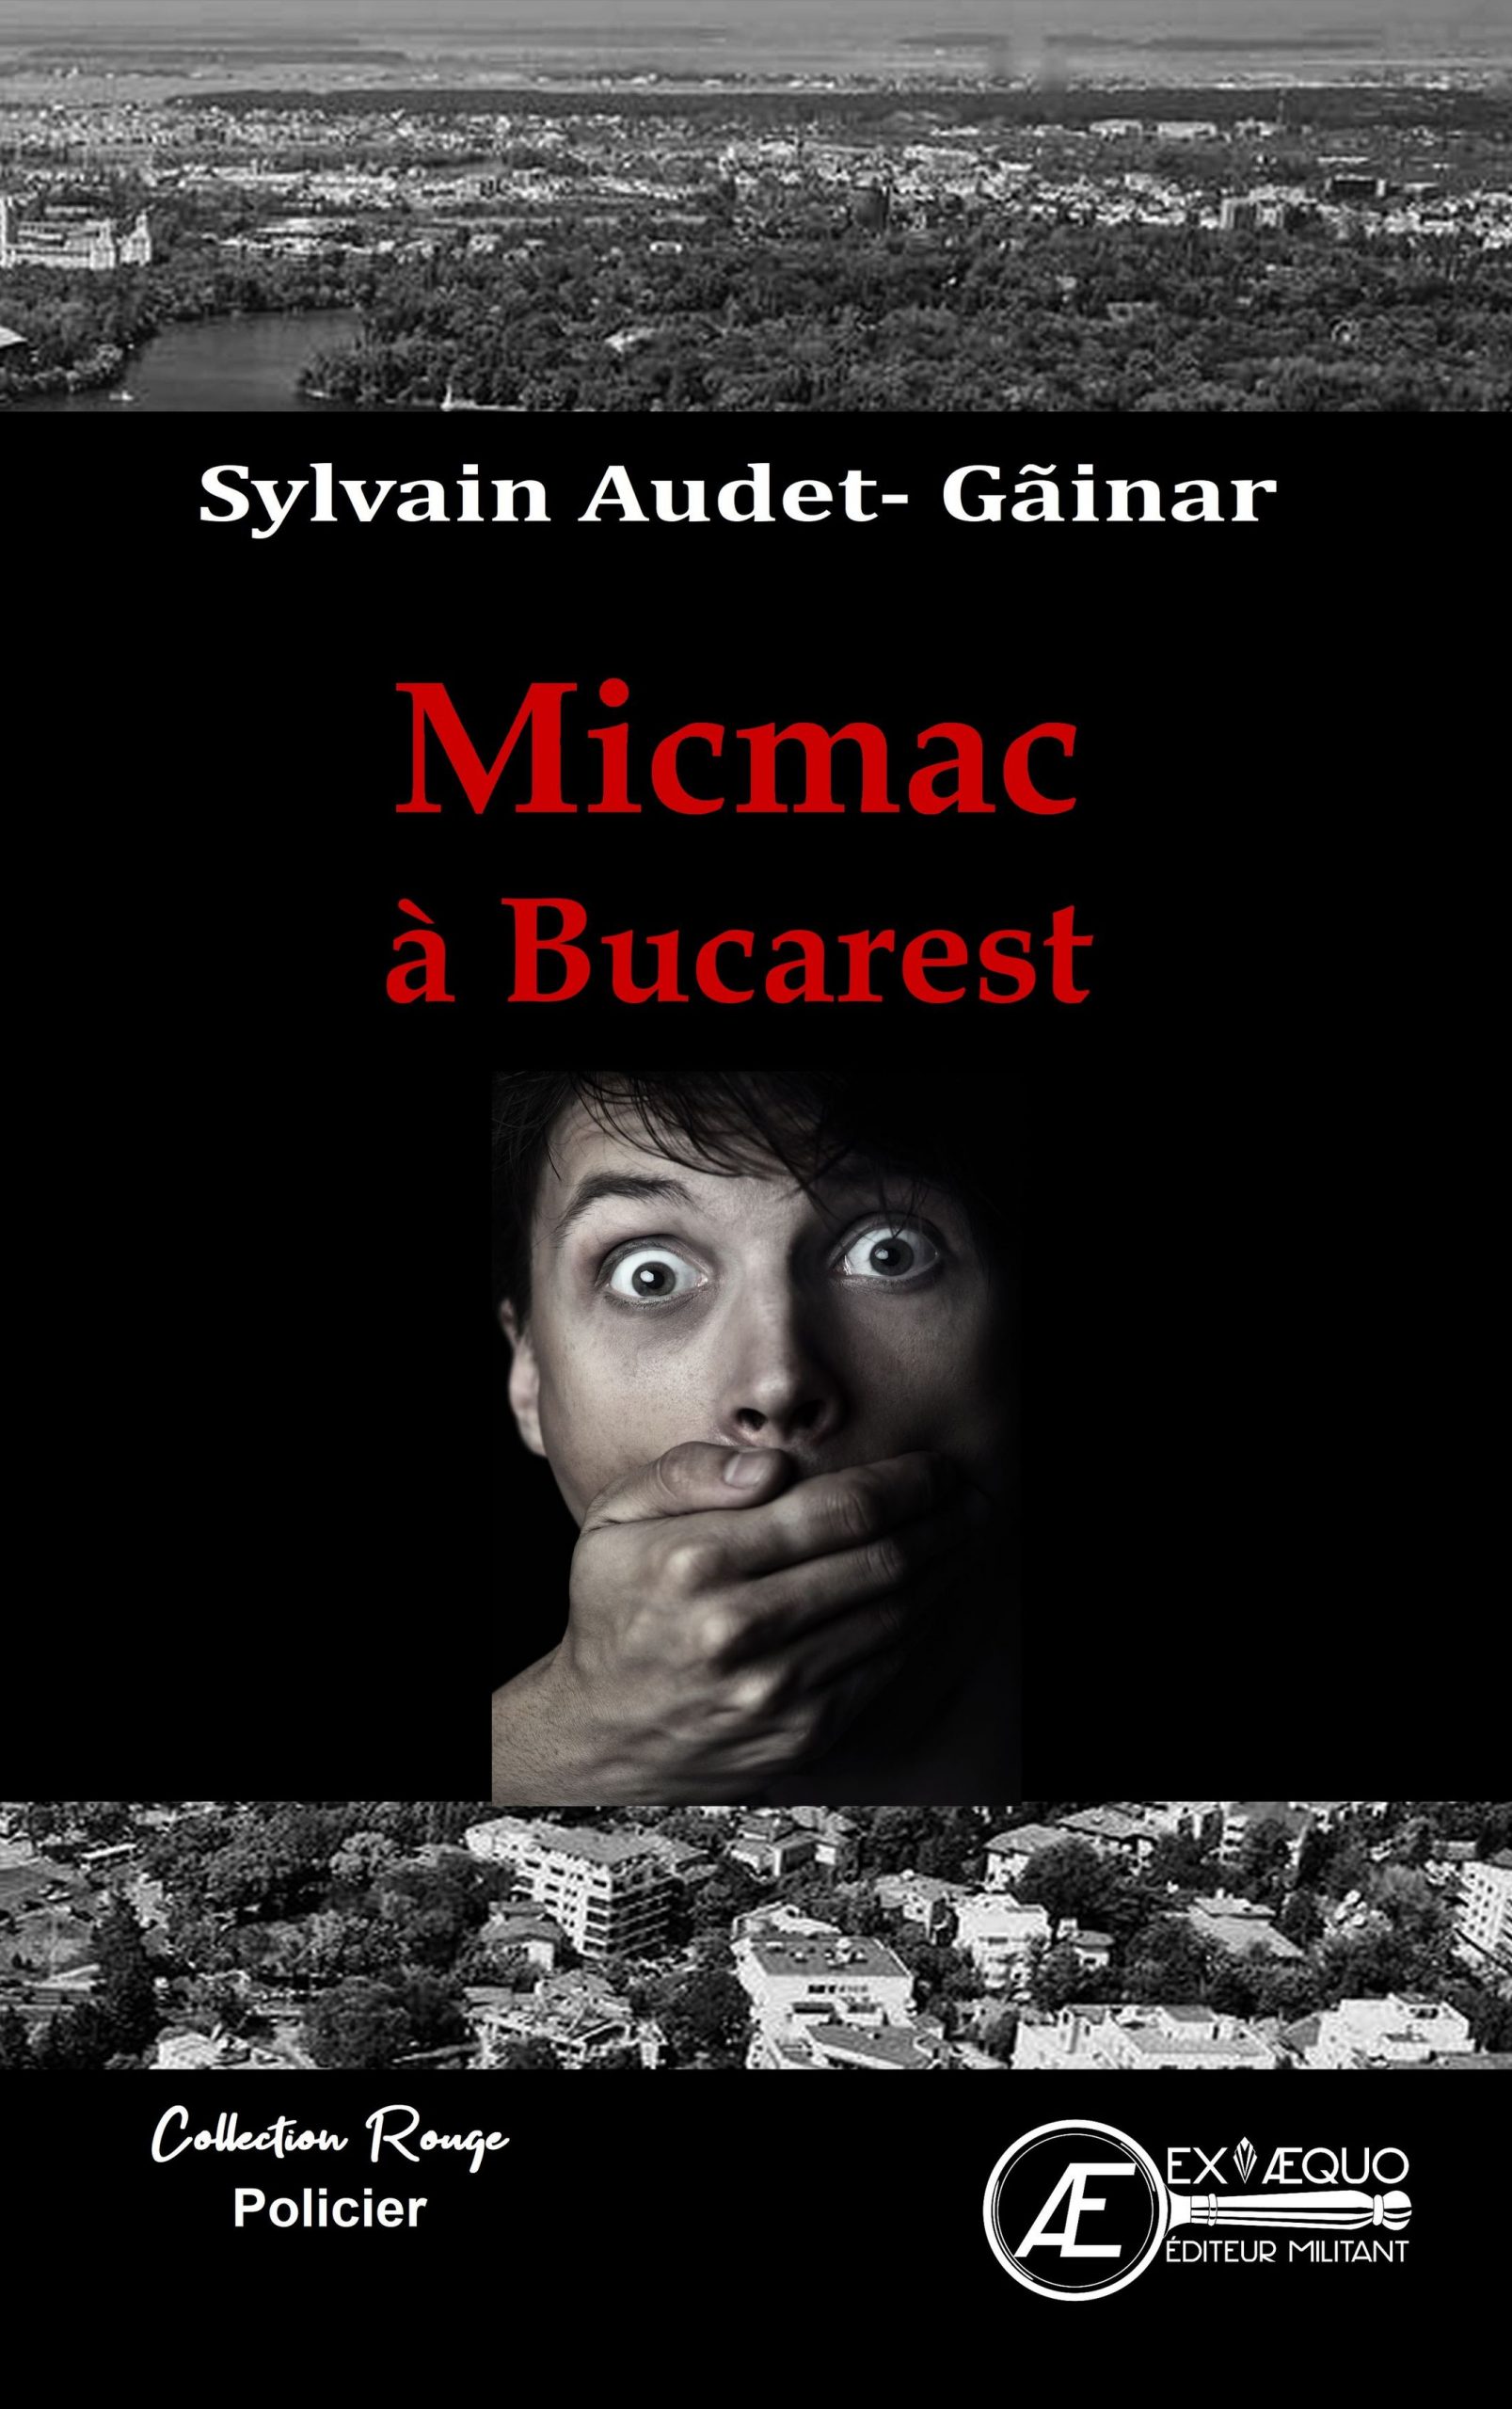 You are currently viewing Micmac à Bucarest, de Sylvain Audet-Găinar